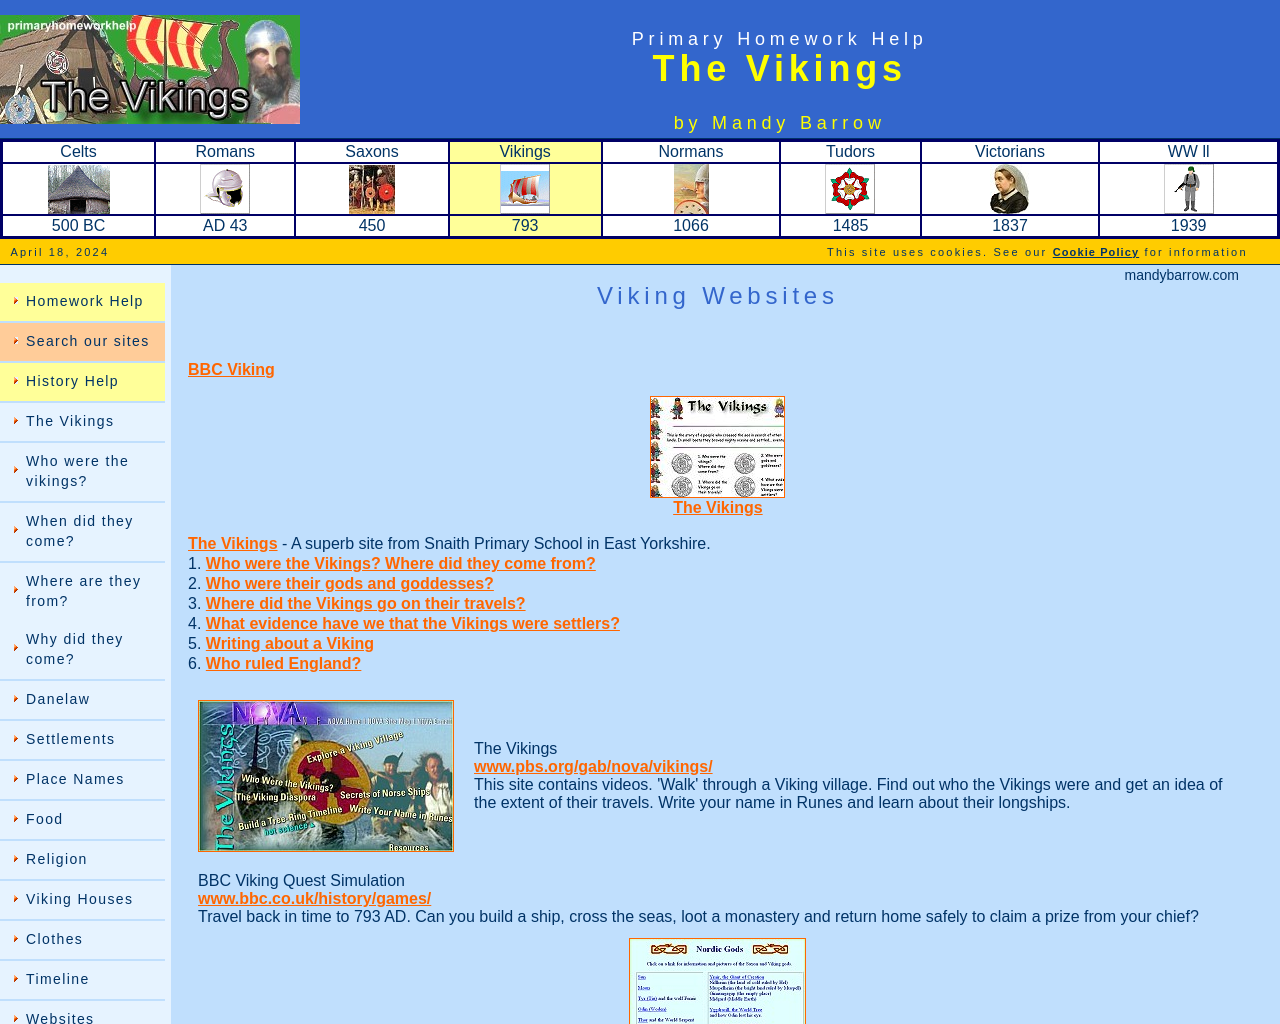 Primary Homework - Vikings